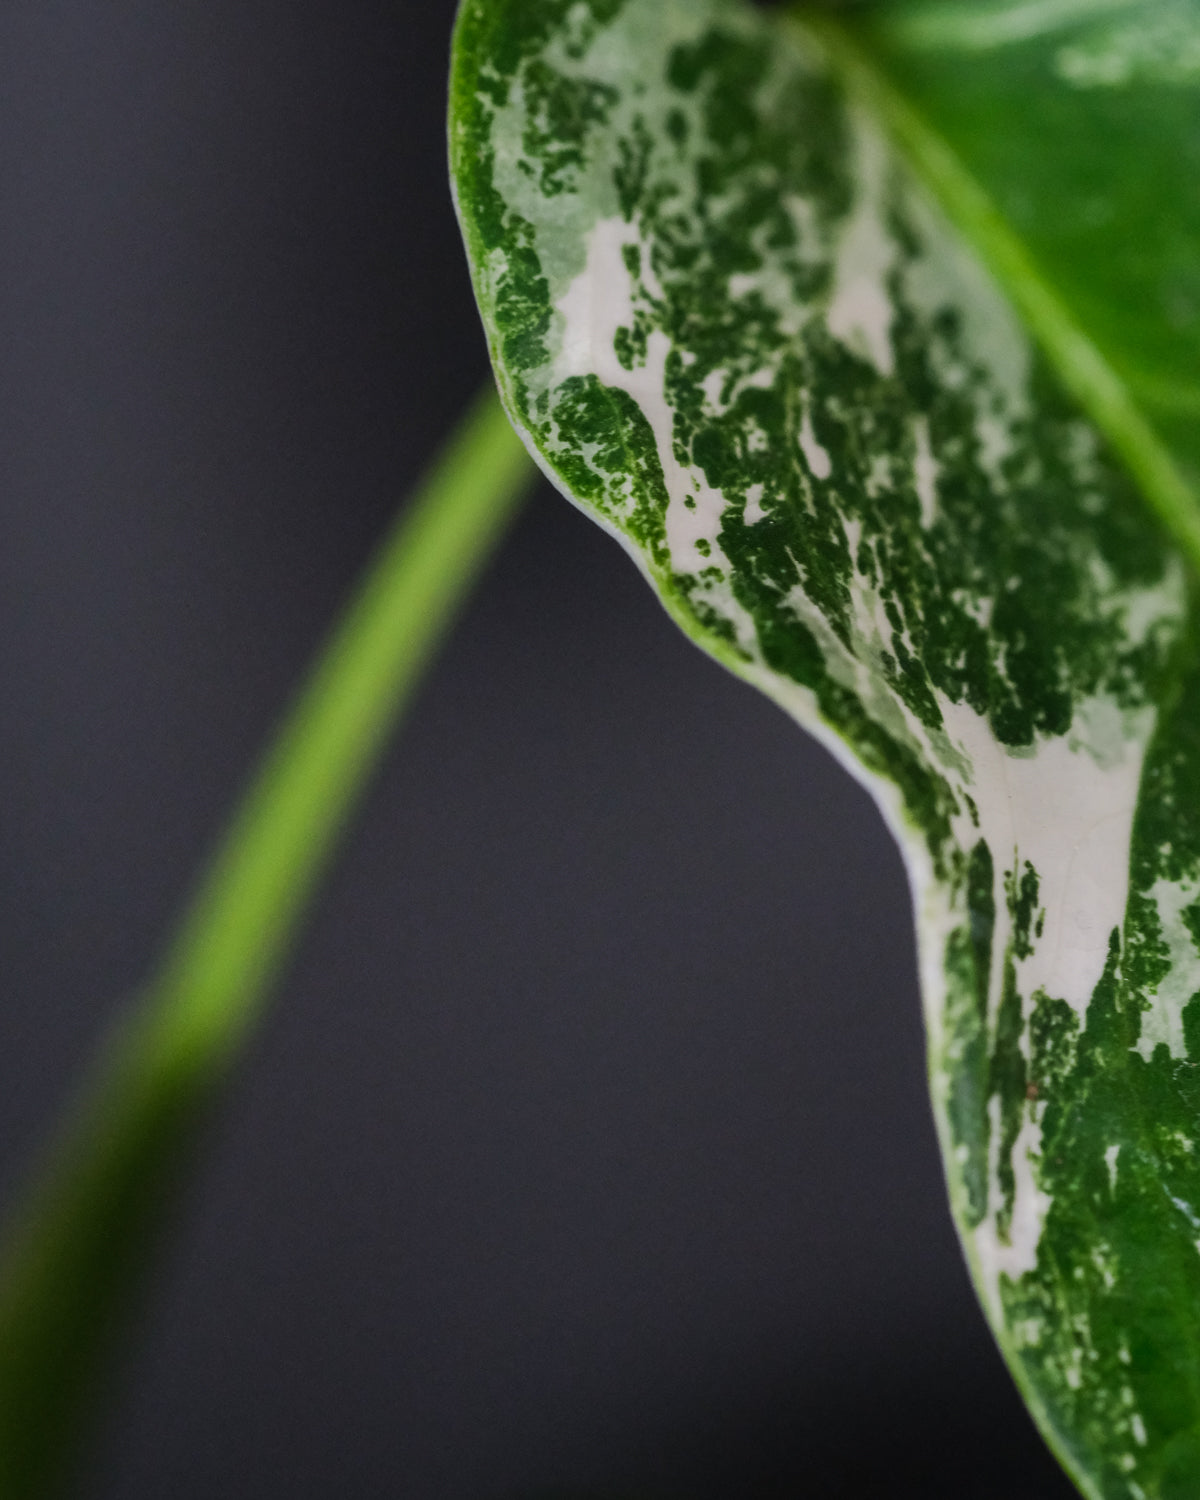 Blatt einer Kleinen Monstera deliciosa variegata mit weissen Flecken